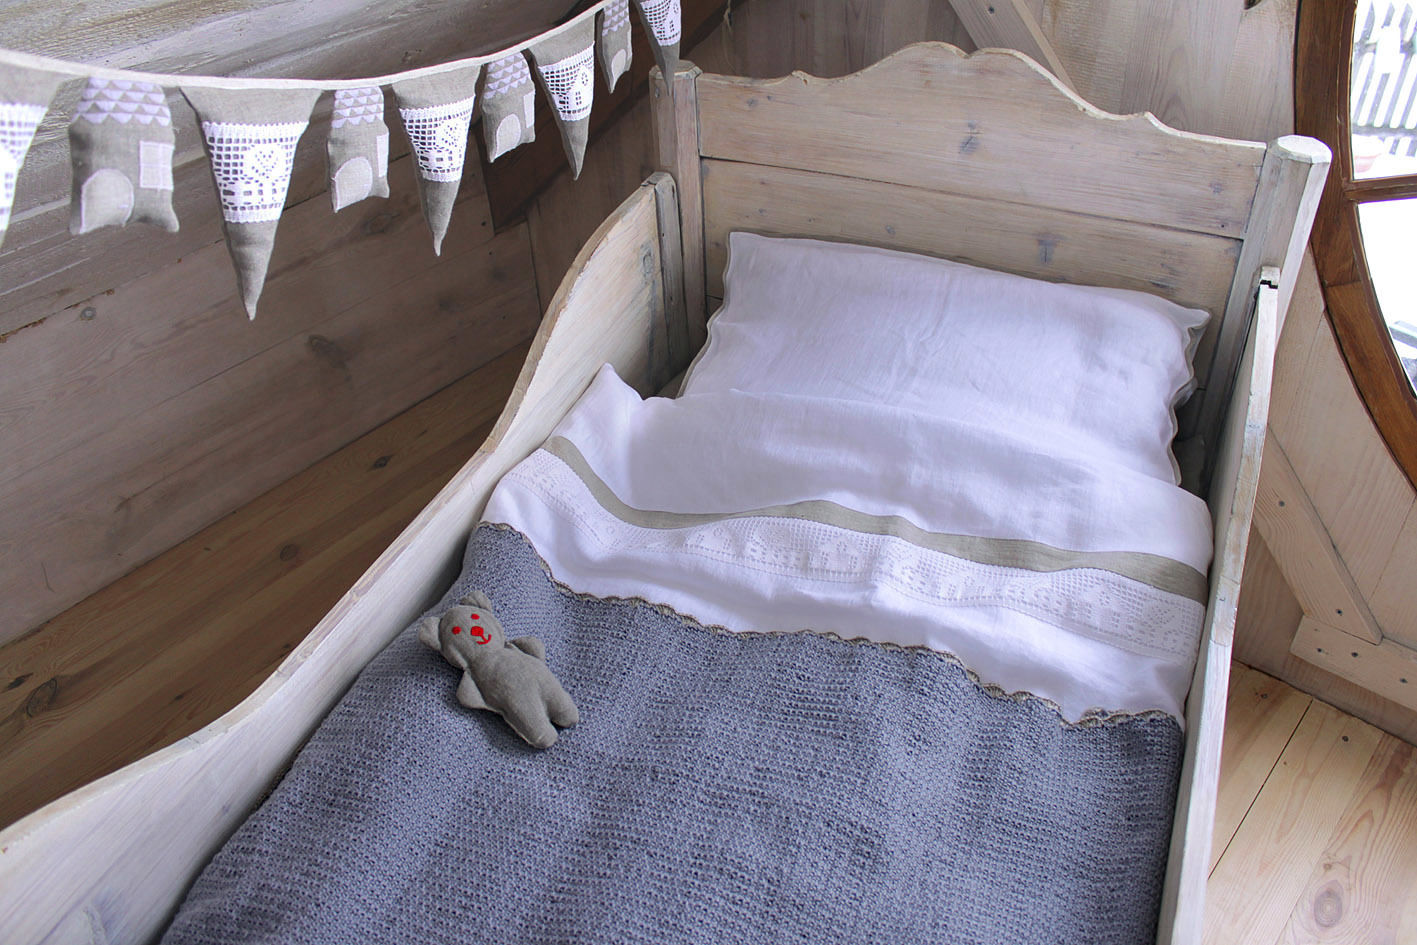 Trouver la beauté dans les choses simples., Handmade of Passion Handmade of Passion Classic style nursery/kids room Beds & cribs